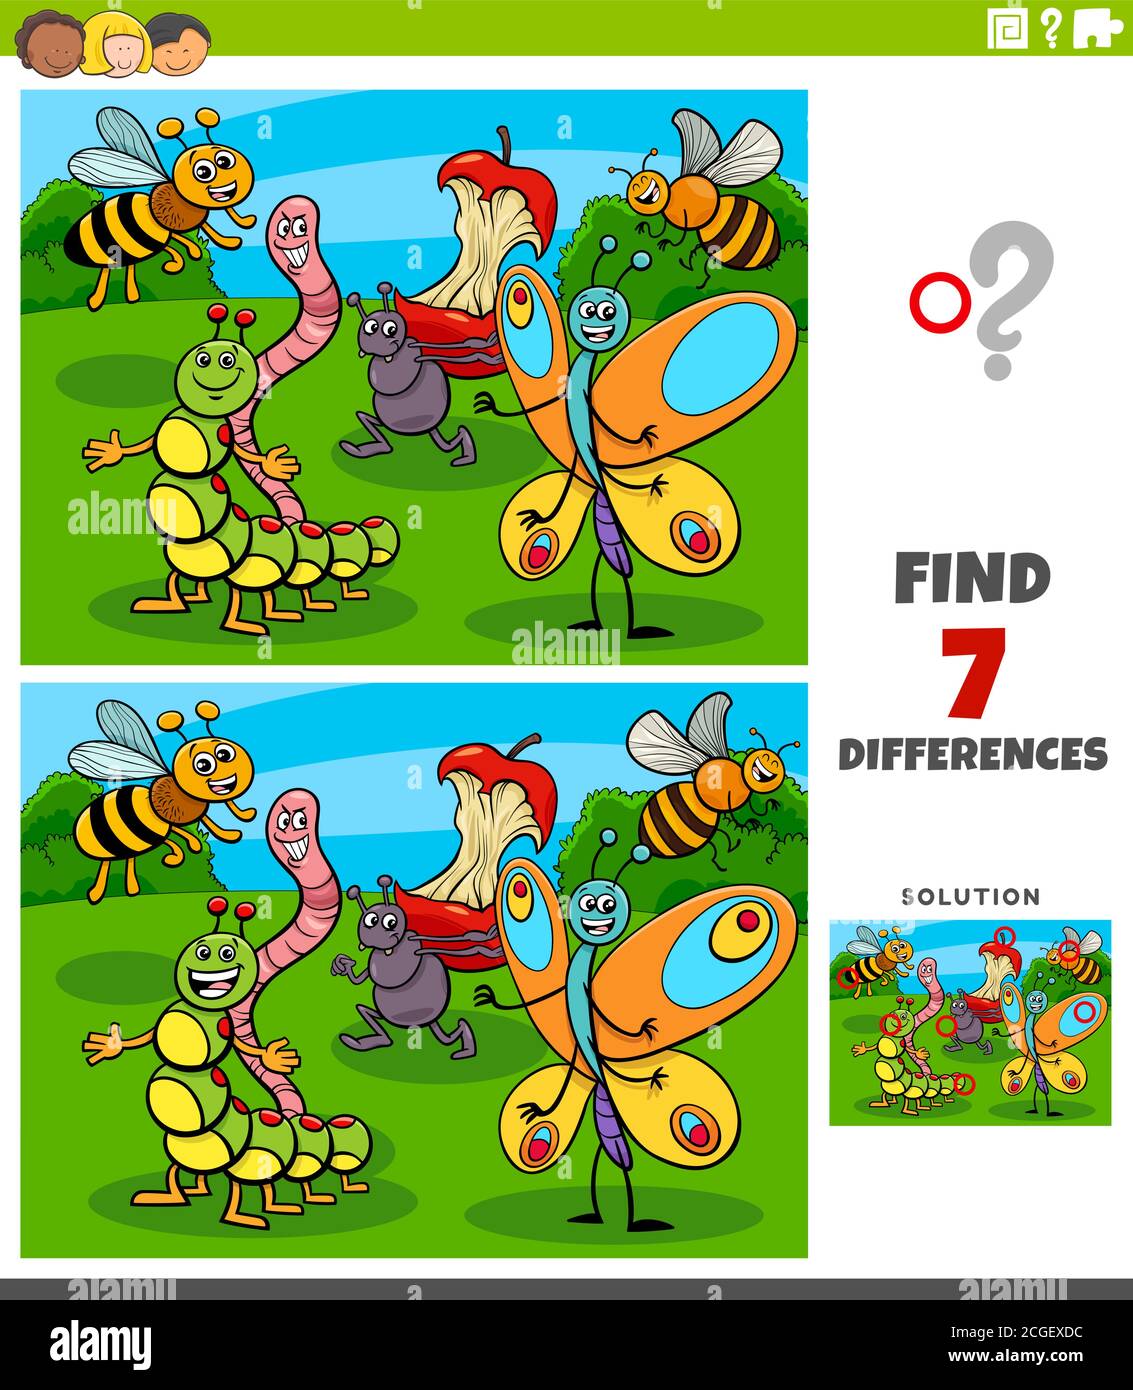 Ilustración de dibujos animados de encontrar diferencias entre los cuadros  Juego educativo para Niños con personajes de insectos cómicos Imagen Vector  de stock - Alamy